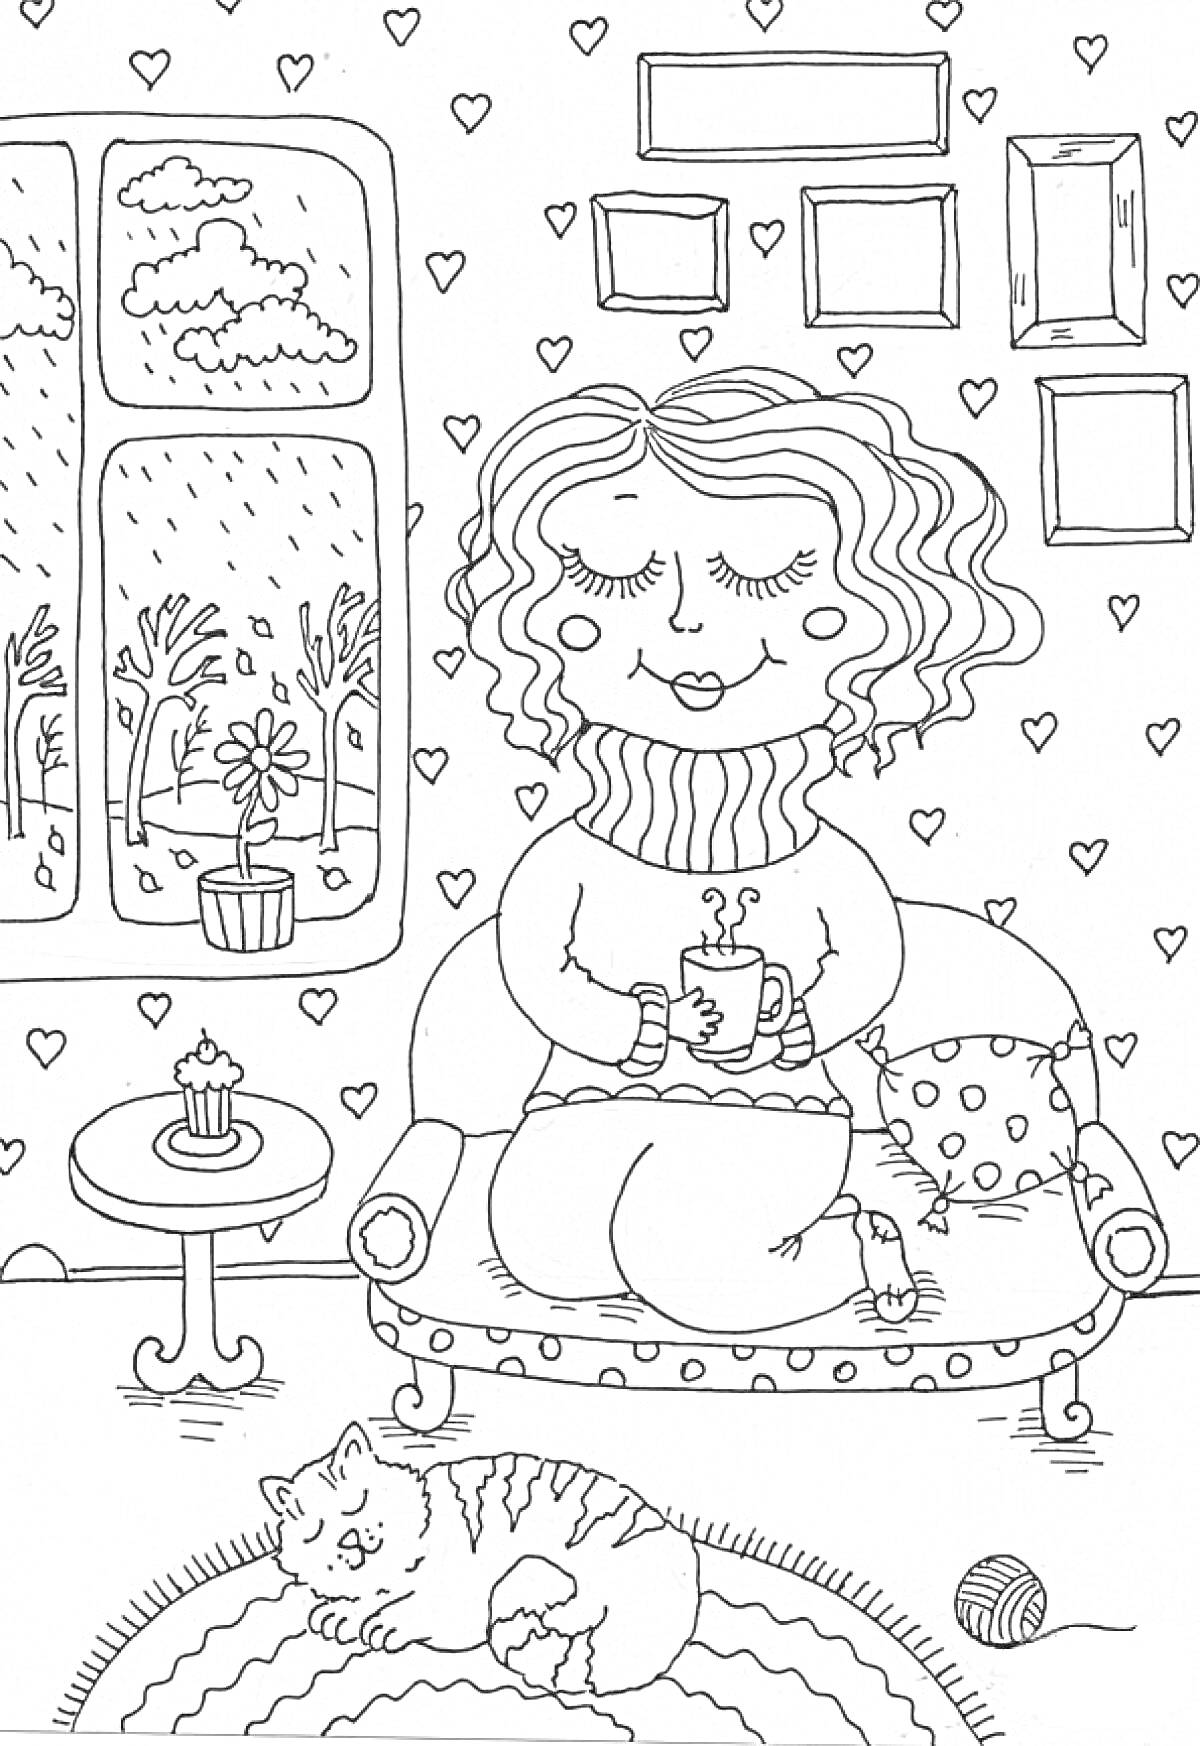 Раскраска Осенний уют - женщина на диване с чашкой, кот на коврике, вид из окна с деревьями и дождем, столик с кексом, подушка